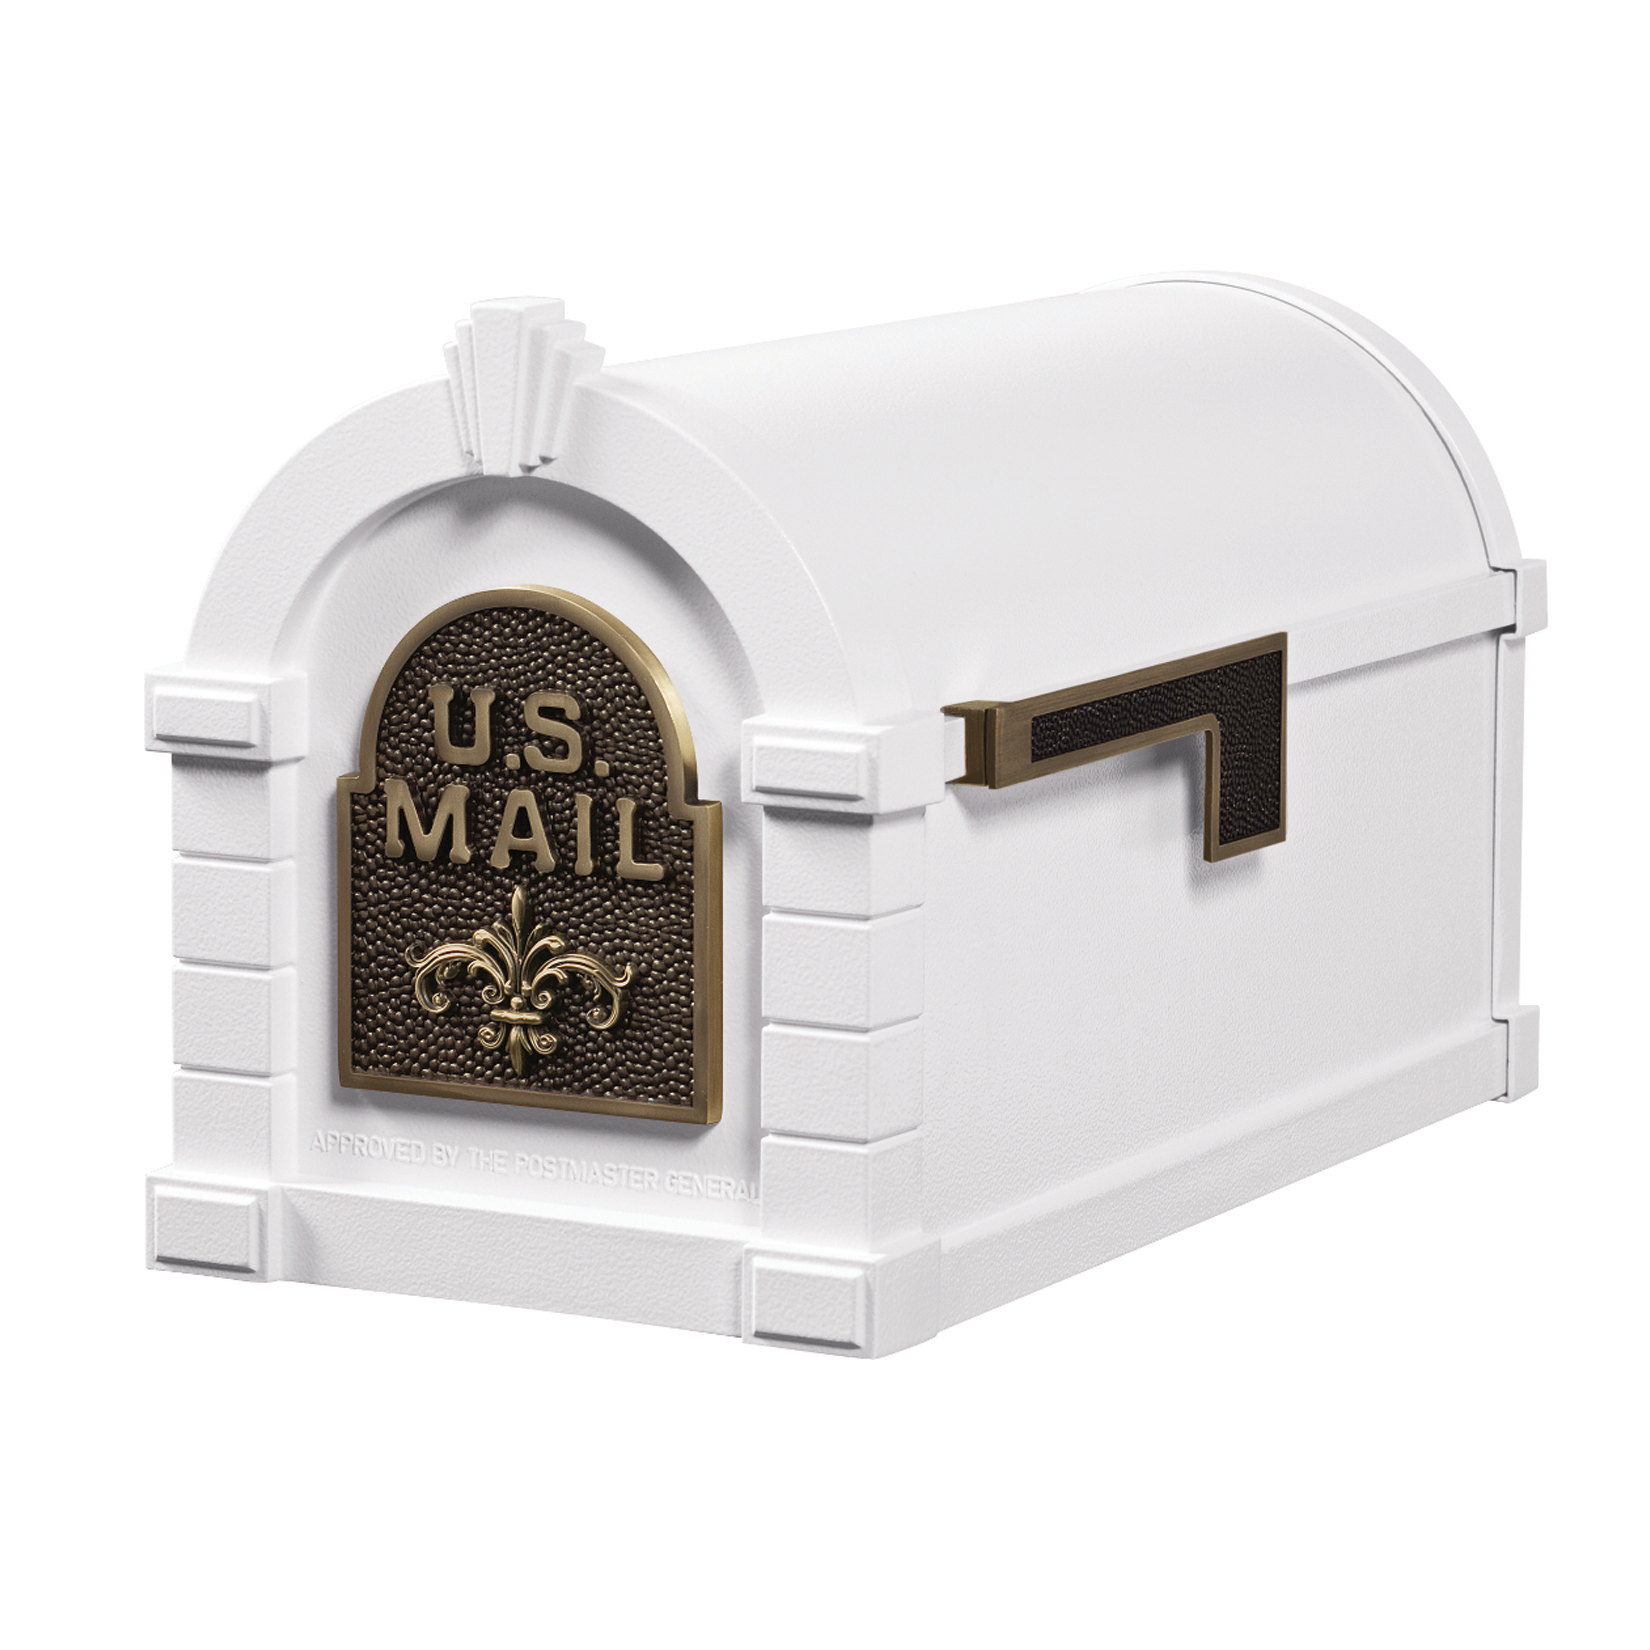 Gaines Fleur De Lis Keystone Mailboxes<br />White with Antique Bronze